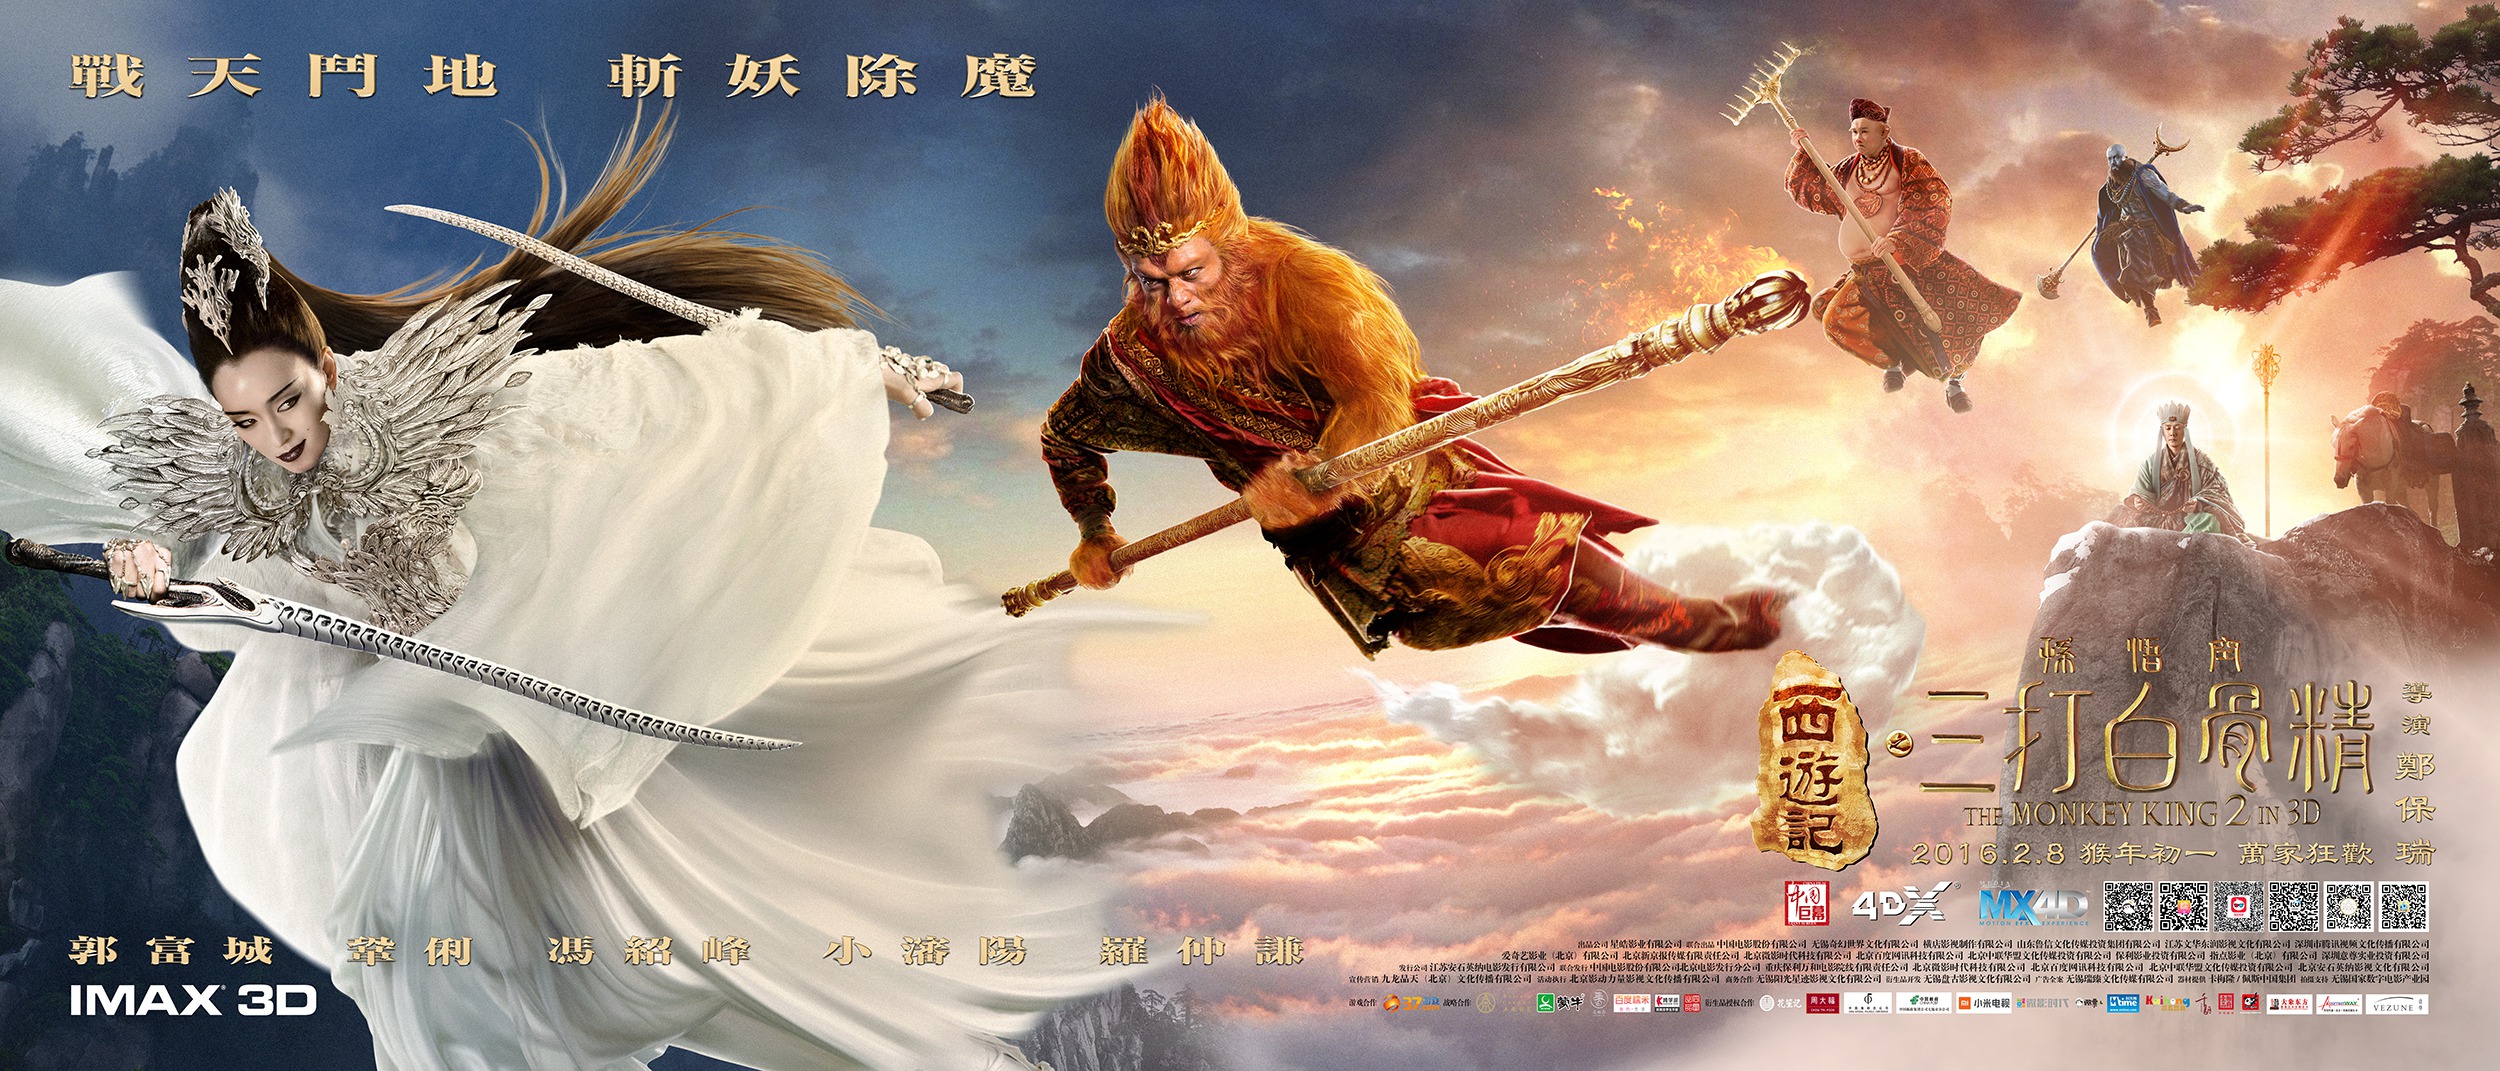 Mega Sized Movie Poster Image for Xi you ji zhi: Sun Wukong san da Baigu Jing (#9 of 17)